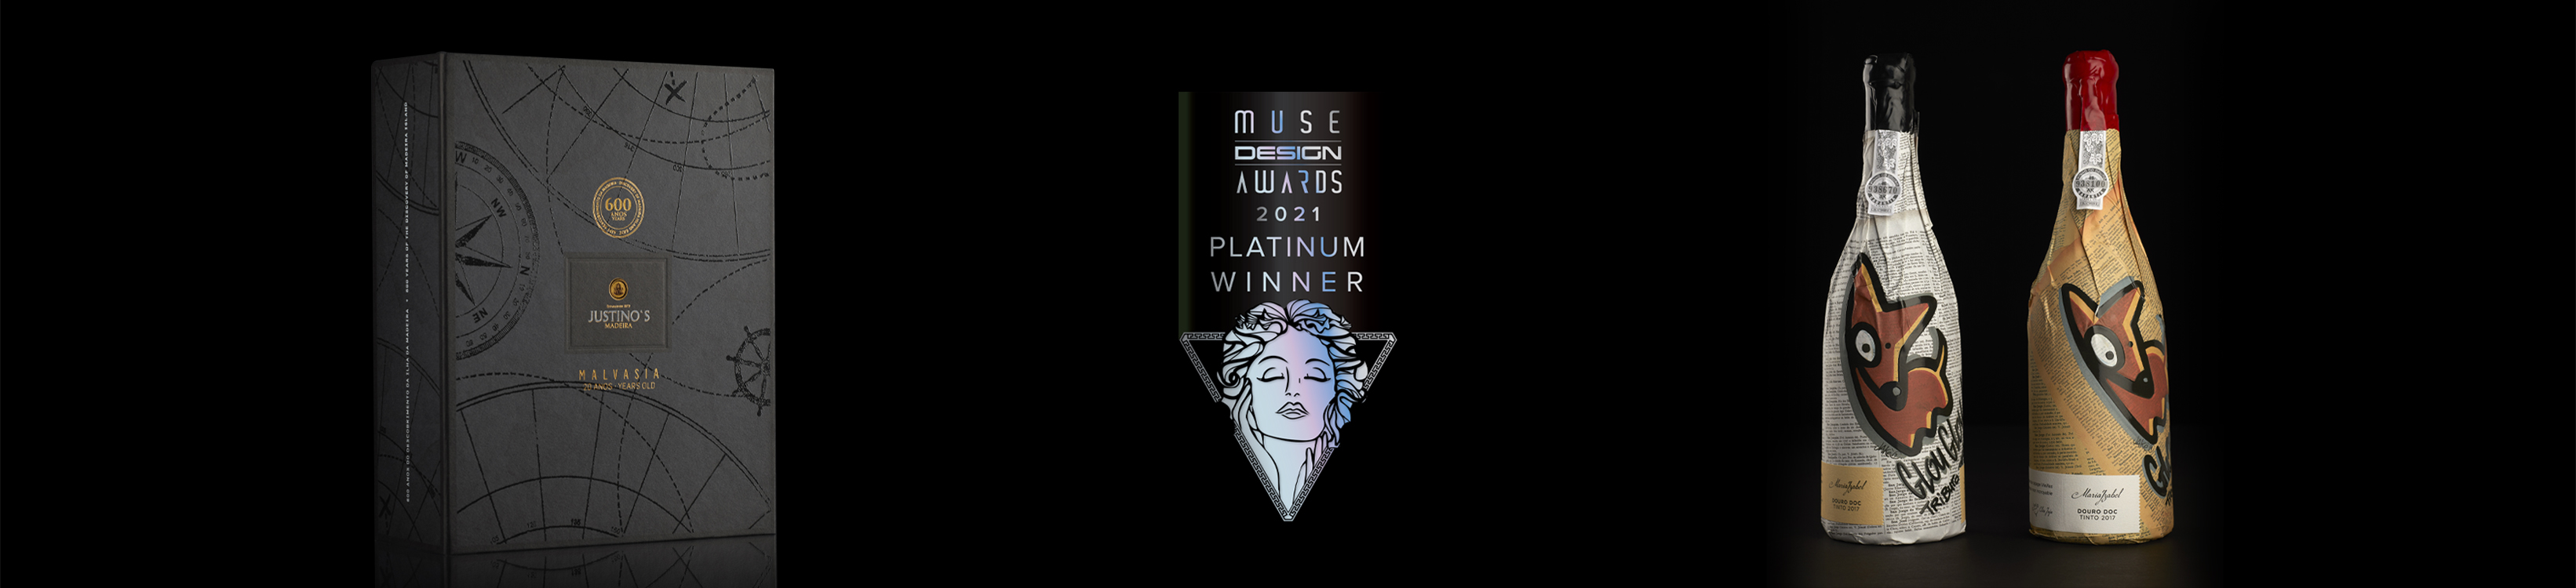 Omdesign multipremiada nos EUA nos Muse Awards 2021